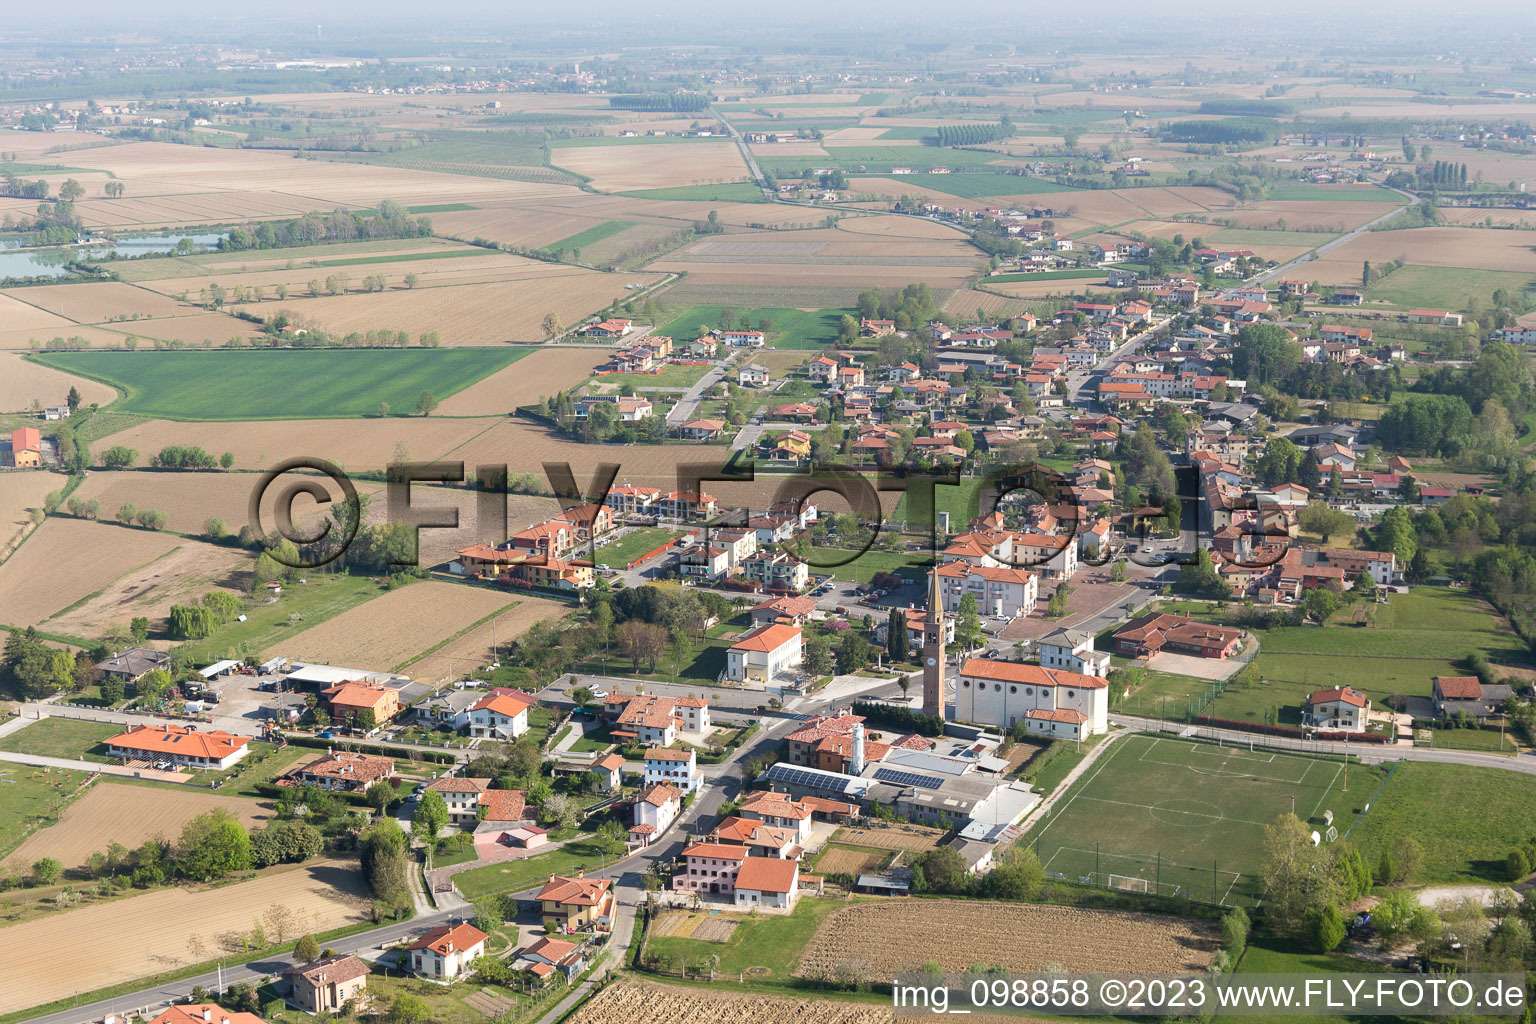 Aerial photograpy of Sega-Malcanton in the state Veneto, Italy